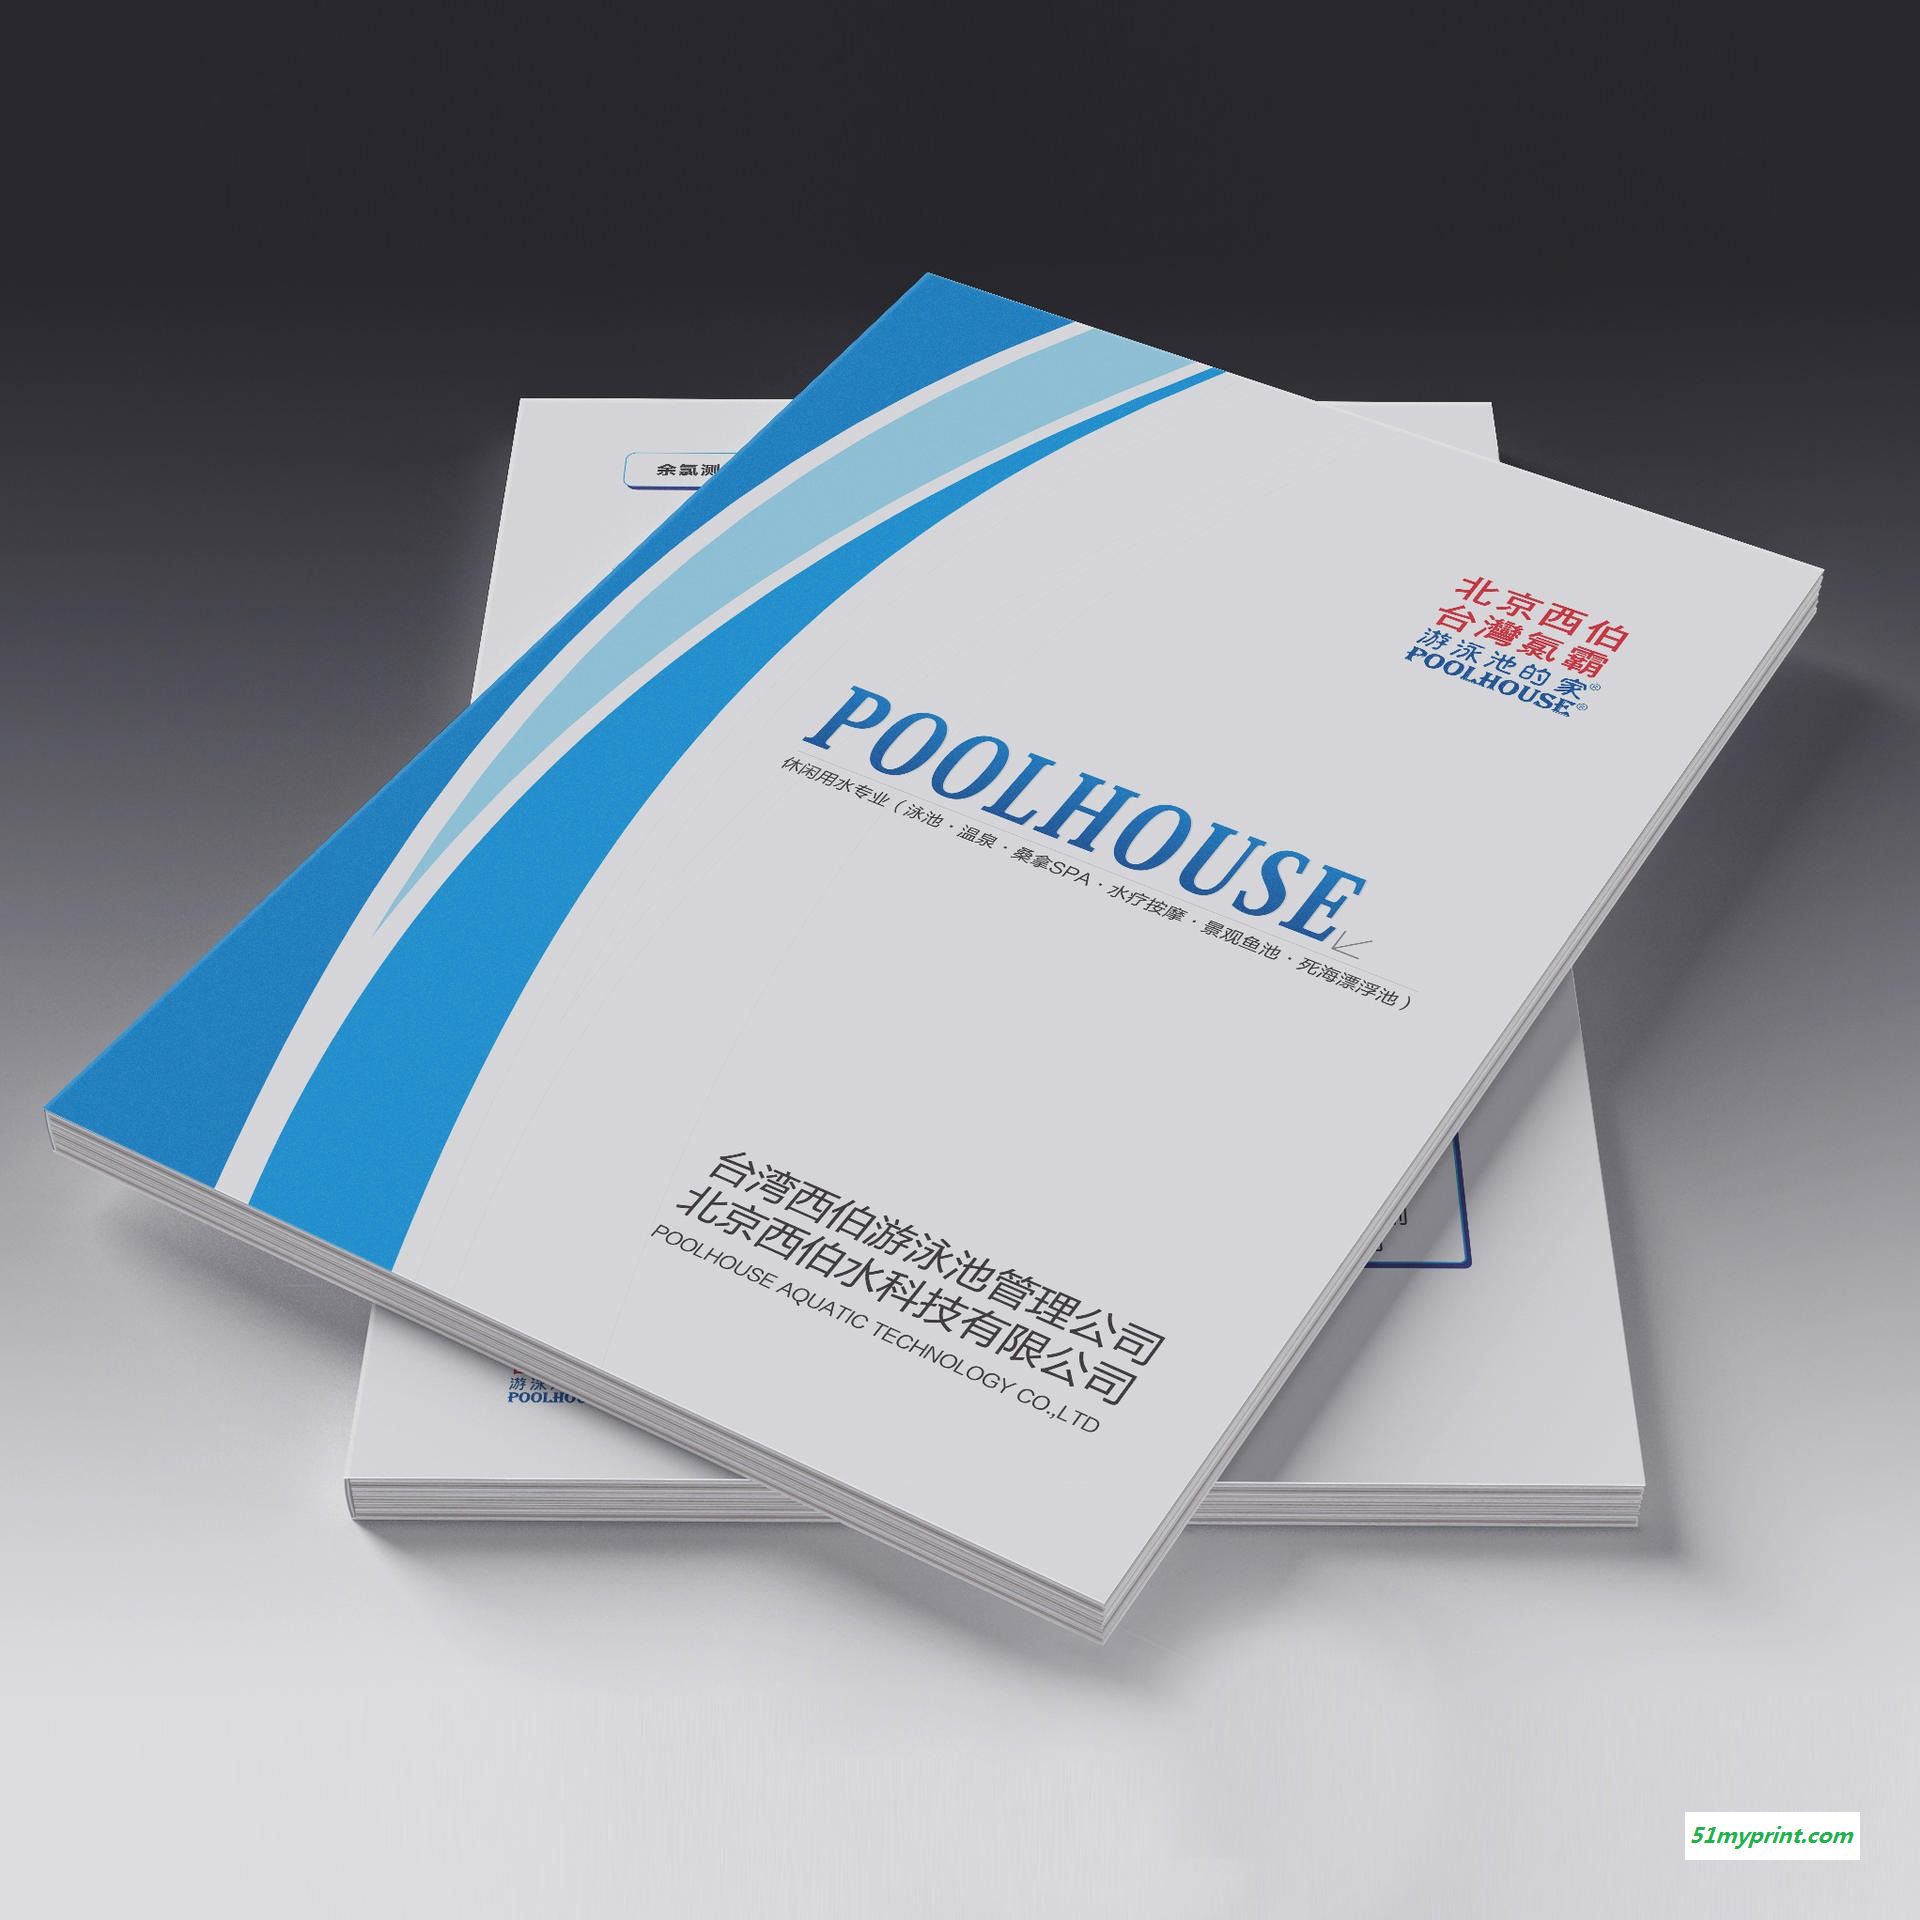 郑州画册印刷厂家,郑州宣传册印刷设计公司